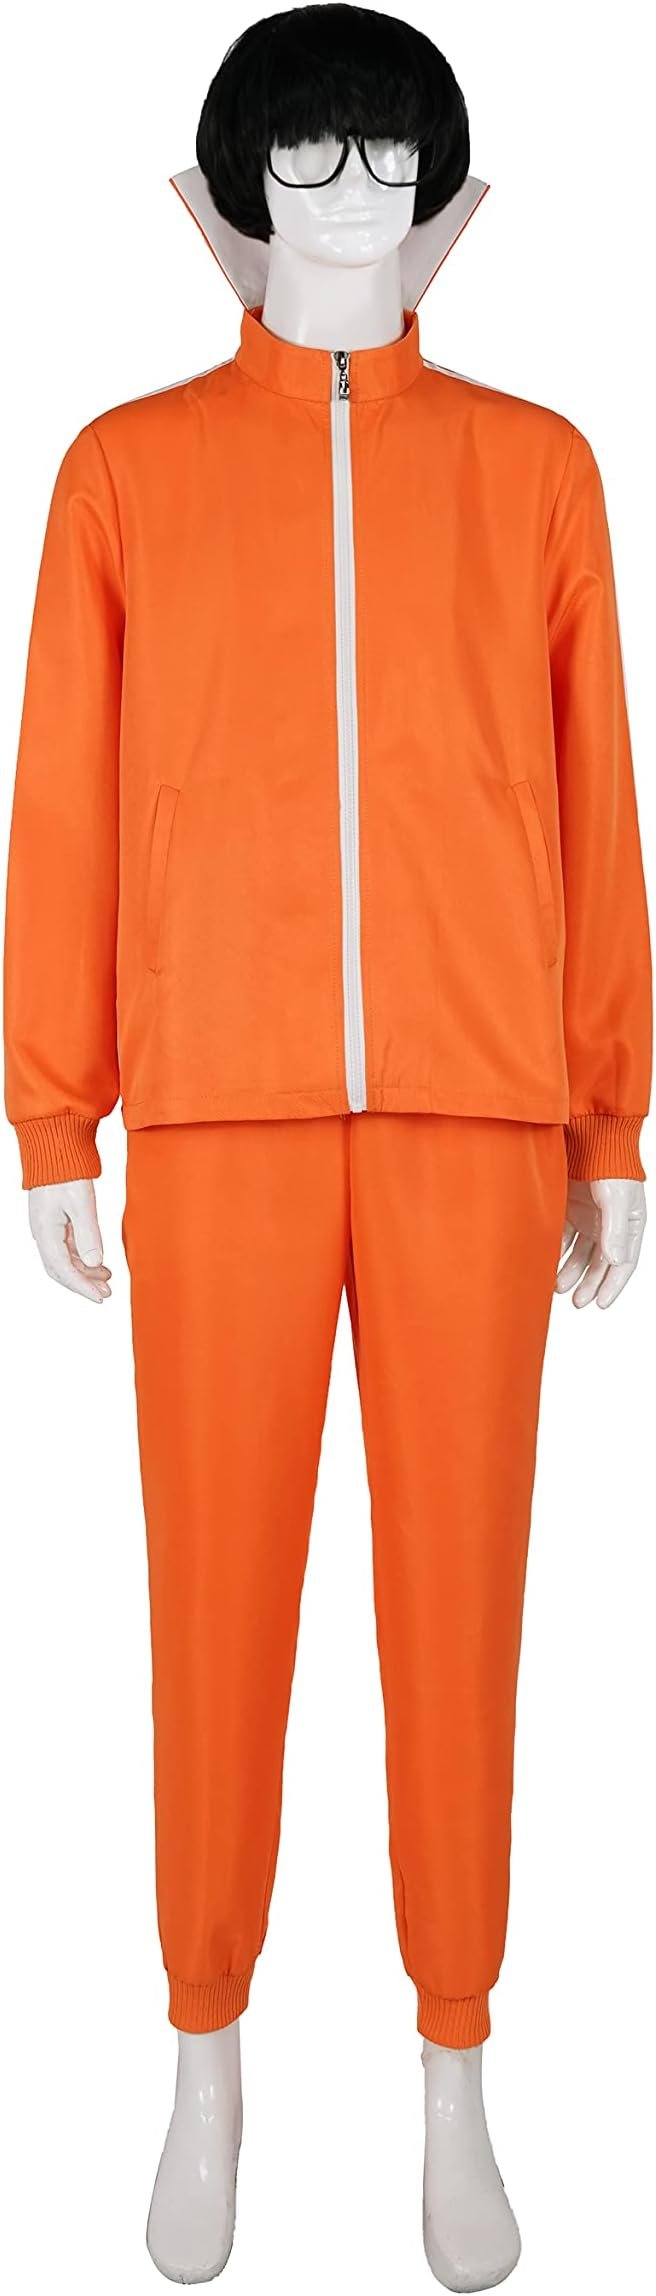 orange-track-suit